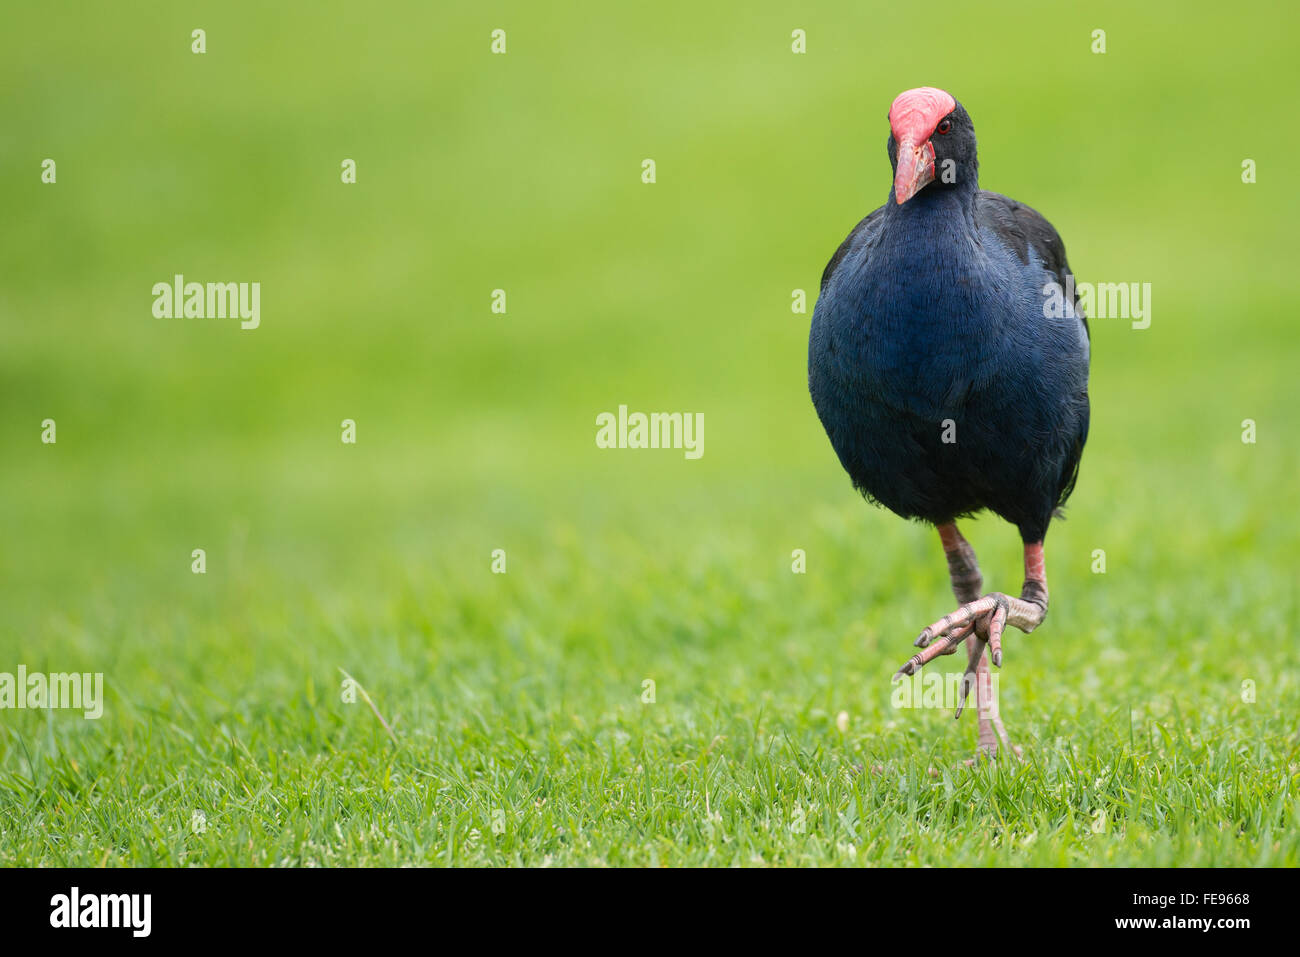 Pukeko bird marche sur la pelouse, Nouvelle-Zélande Banque D'Images